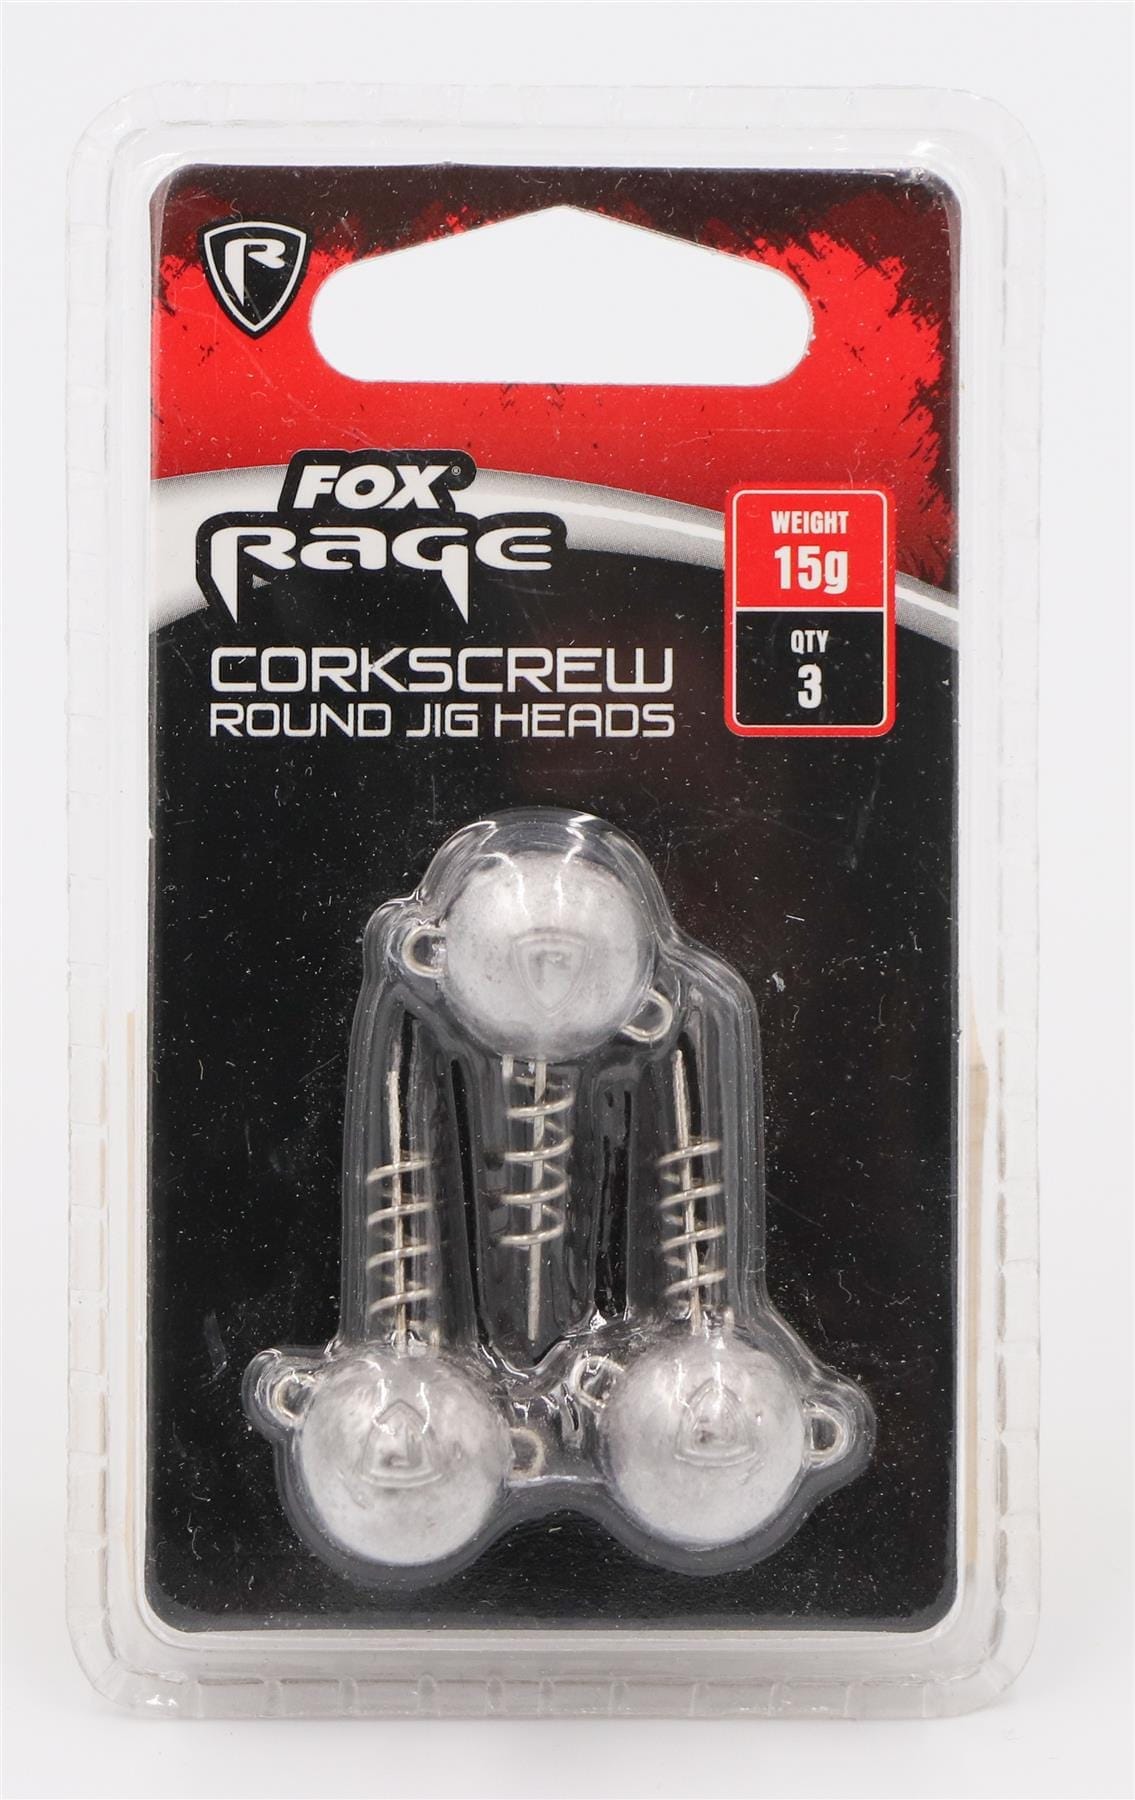 FOX Rage Corkscrew Jig Heads - 15g x3 Round.